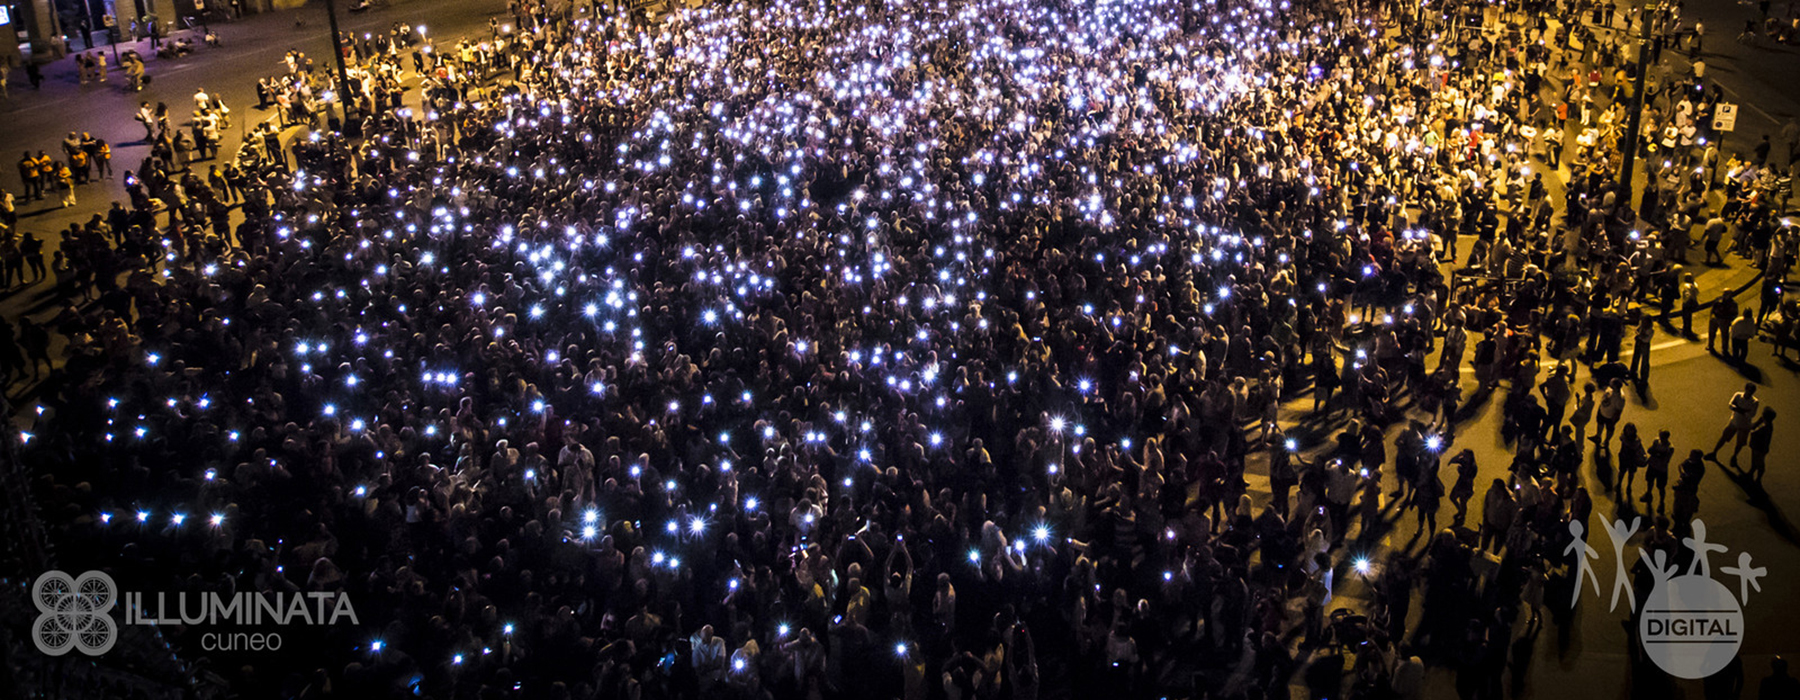 Foto di una folla durante una sera con numerose luci colorate